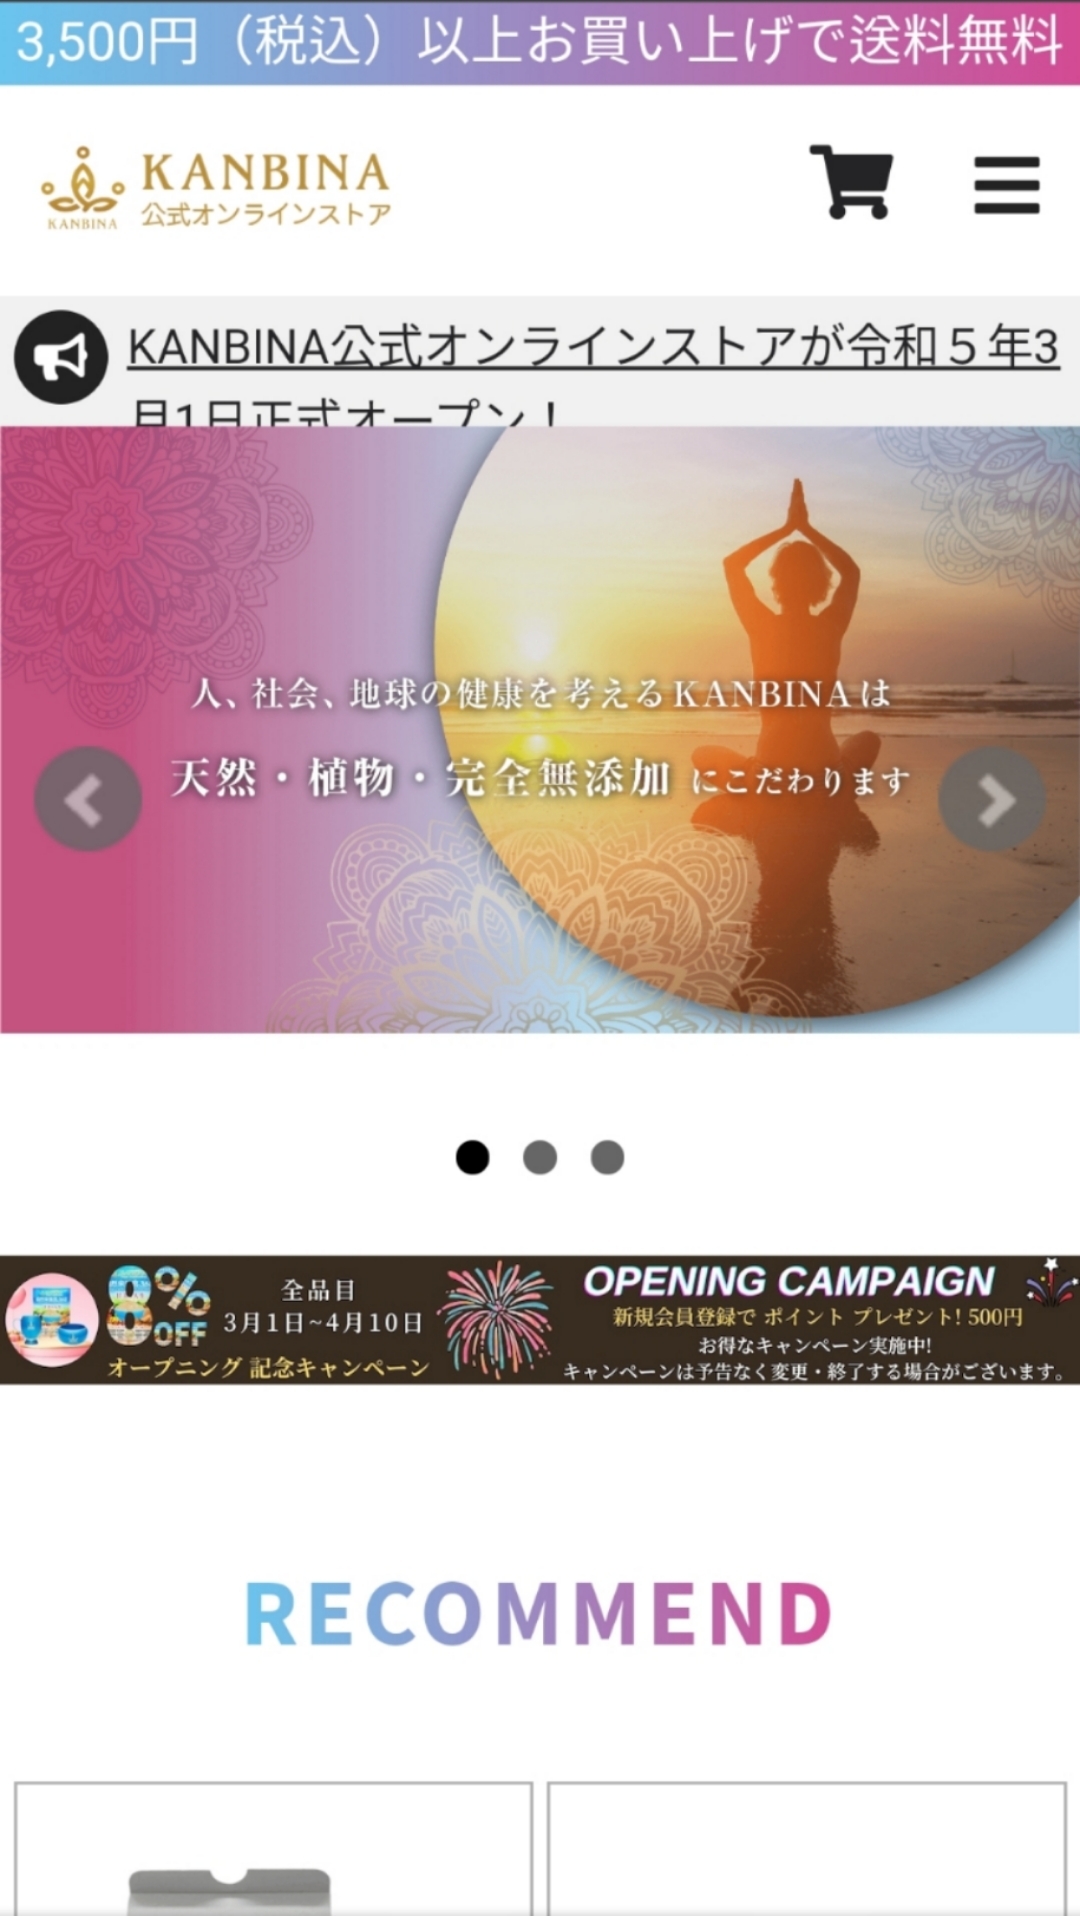 世界初、ヨガ瞑想フード、美磁器など話題の商品満載の
KANBINA公式オンラインストアが3月1日オープン！